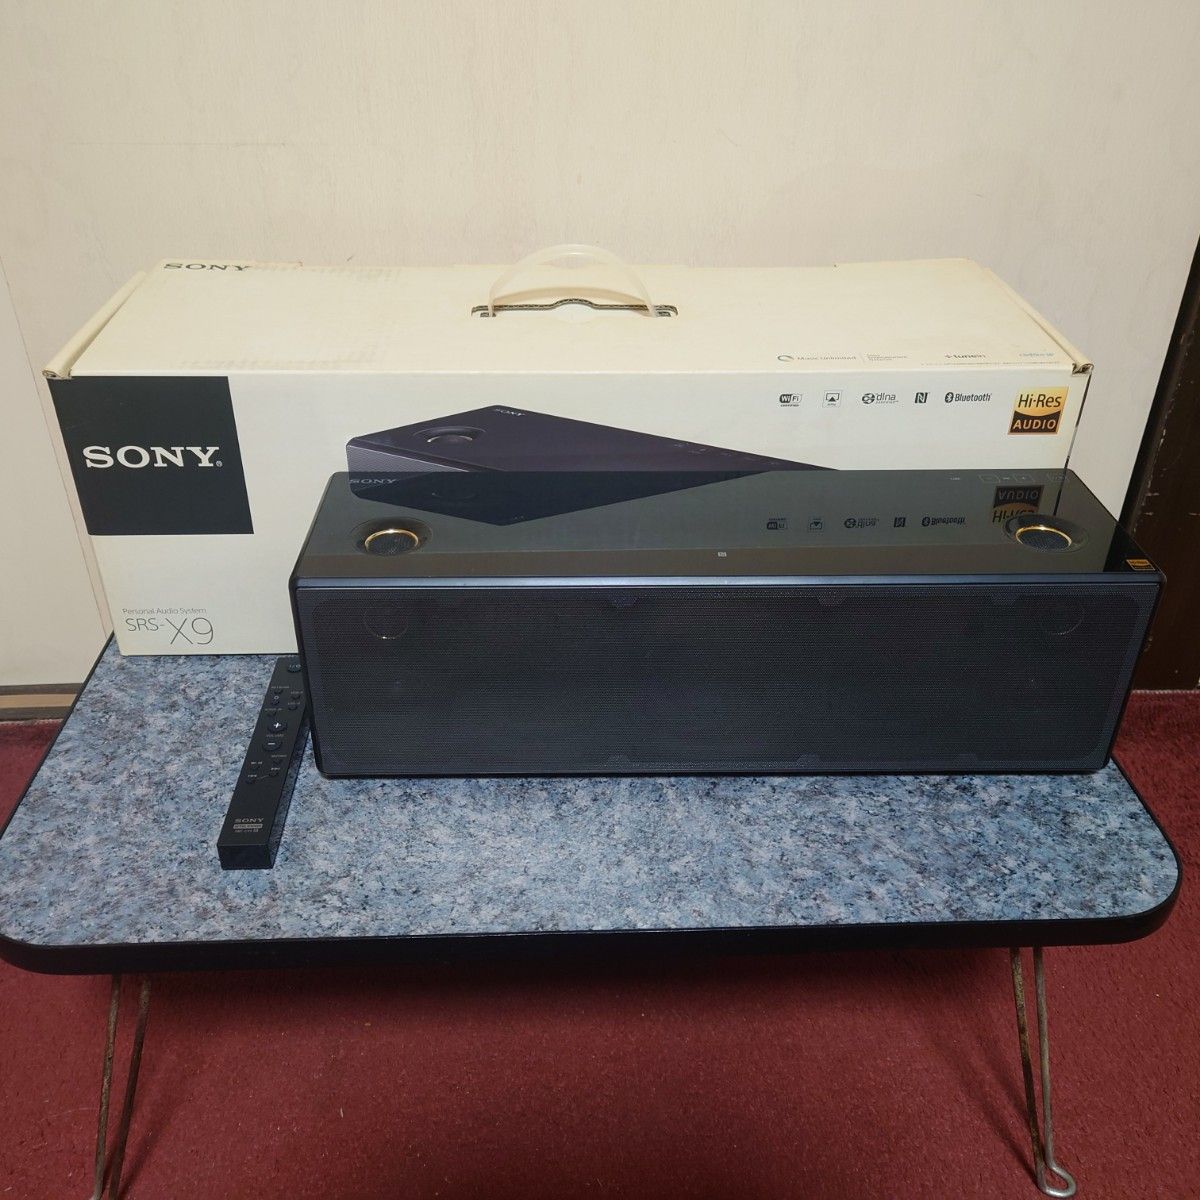 SONY SRS-X9 ハイレゾ対応 ワイヤレス ネットワークスピーカー